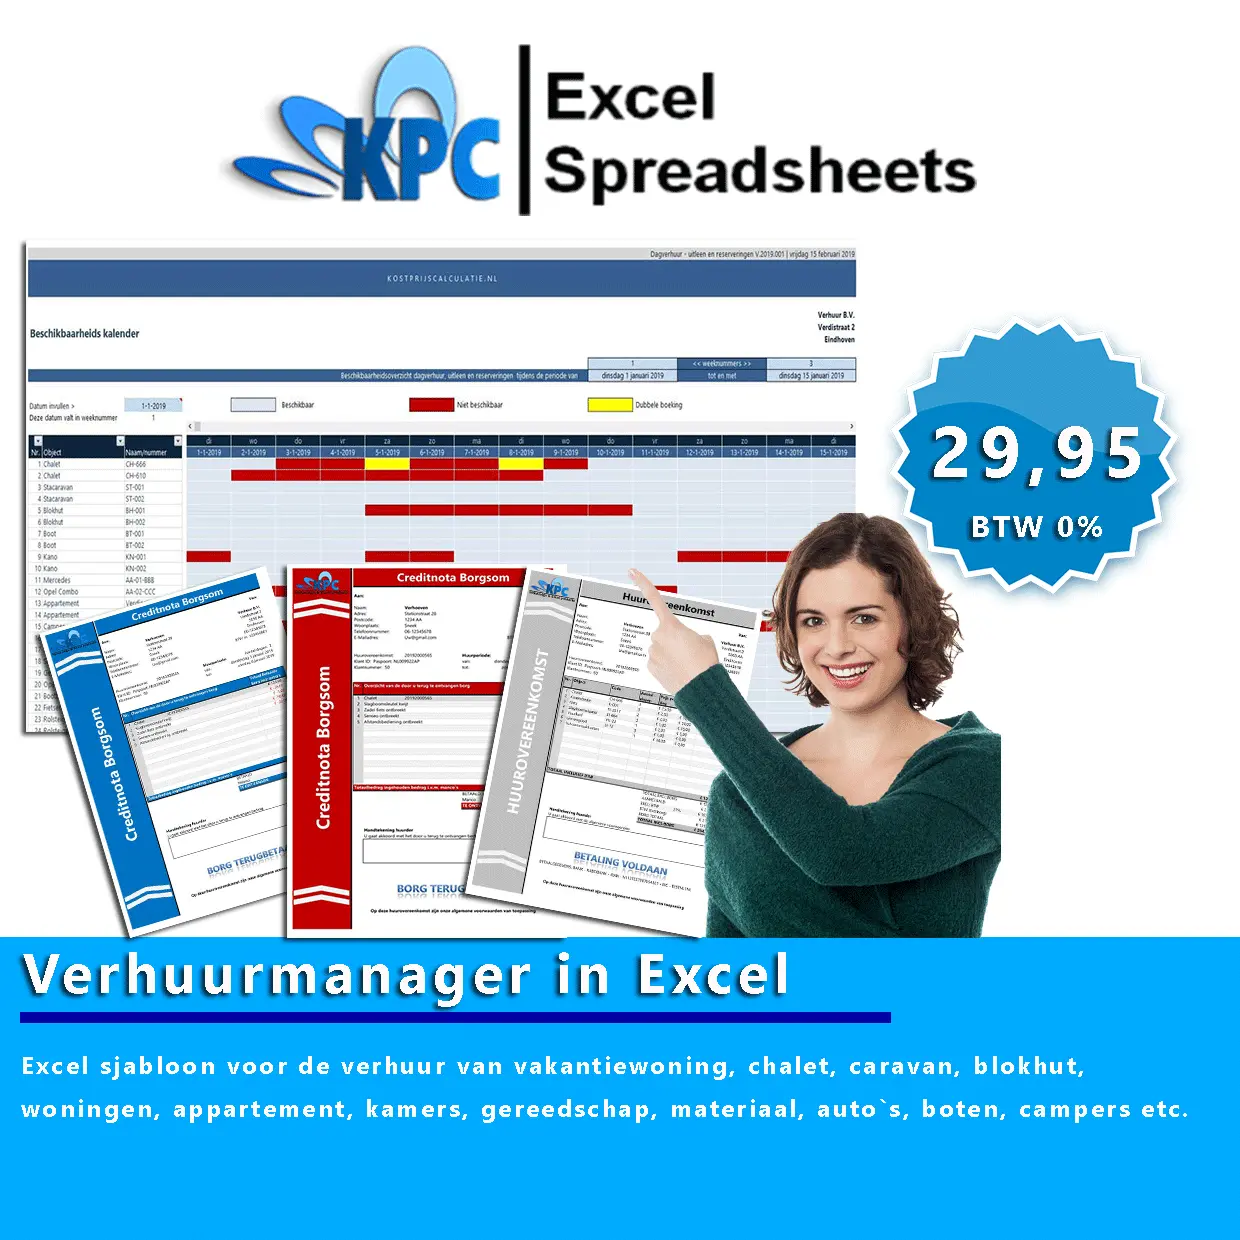 Verhuurmanager-in-Excel